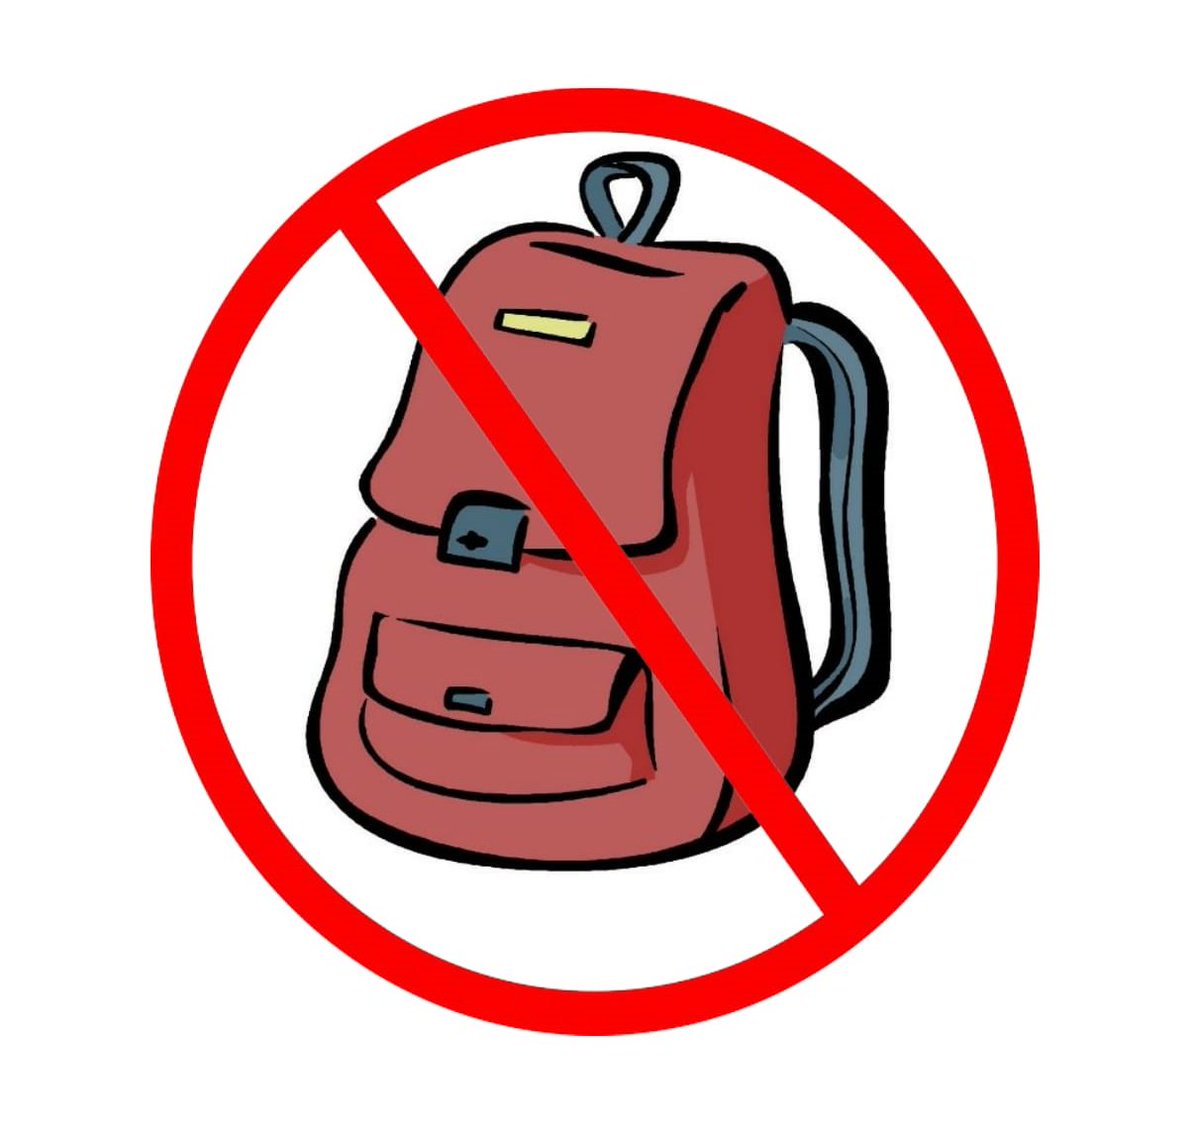 Usach on Twitter: "Recuerda no ingresar con o mochilas al sector de referencia en biblioteca central. https://t.co/QggXYgp2W3" /